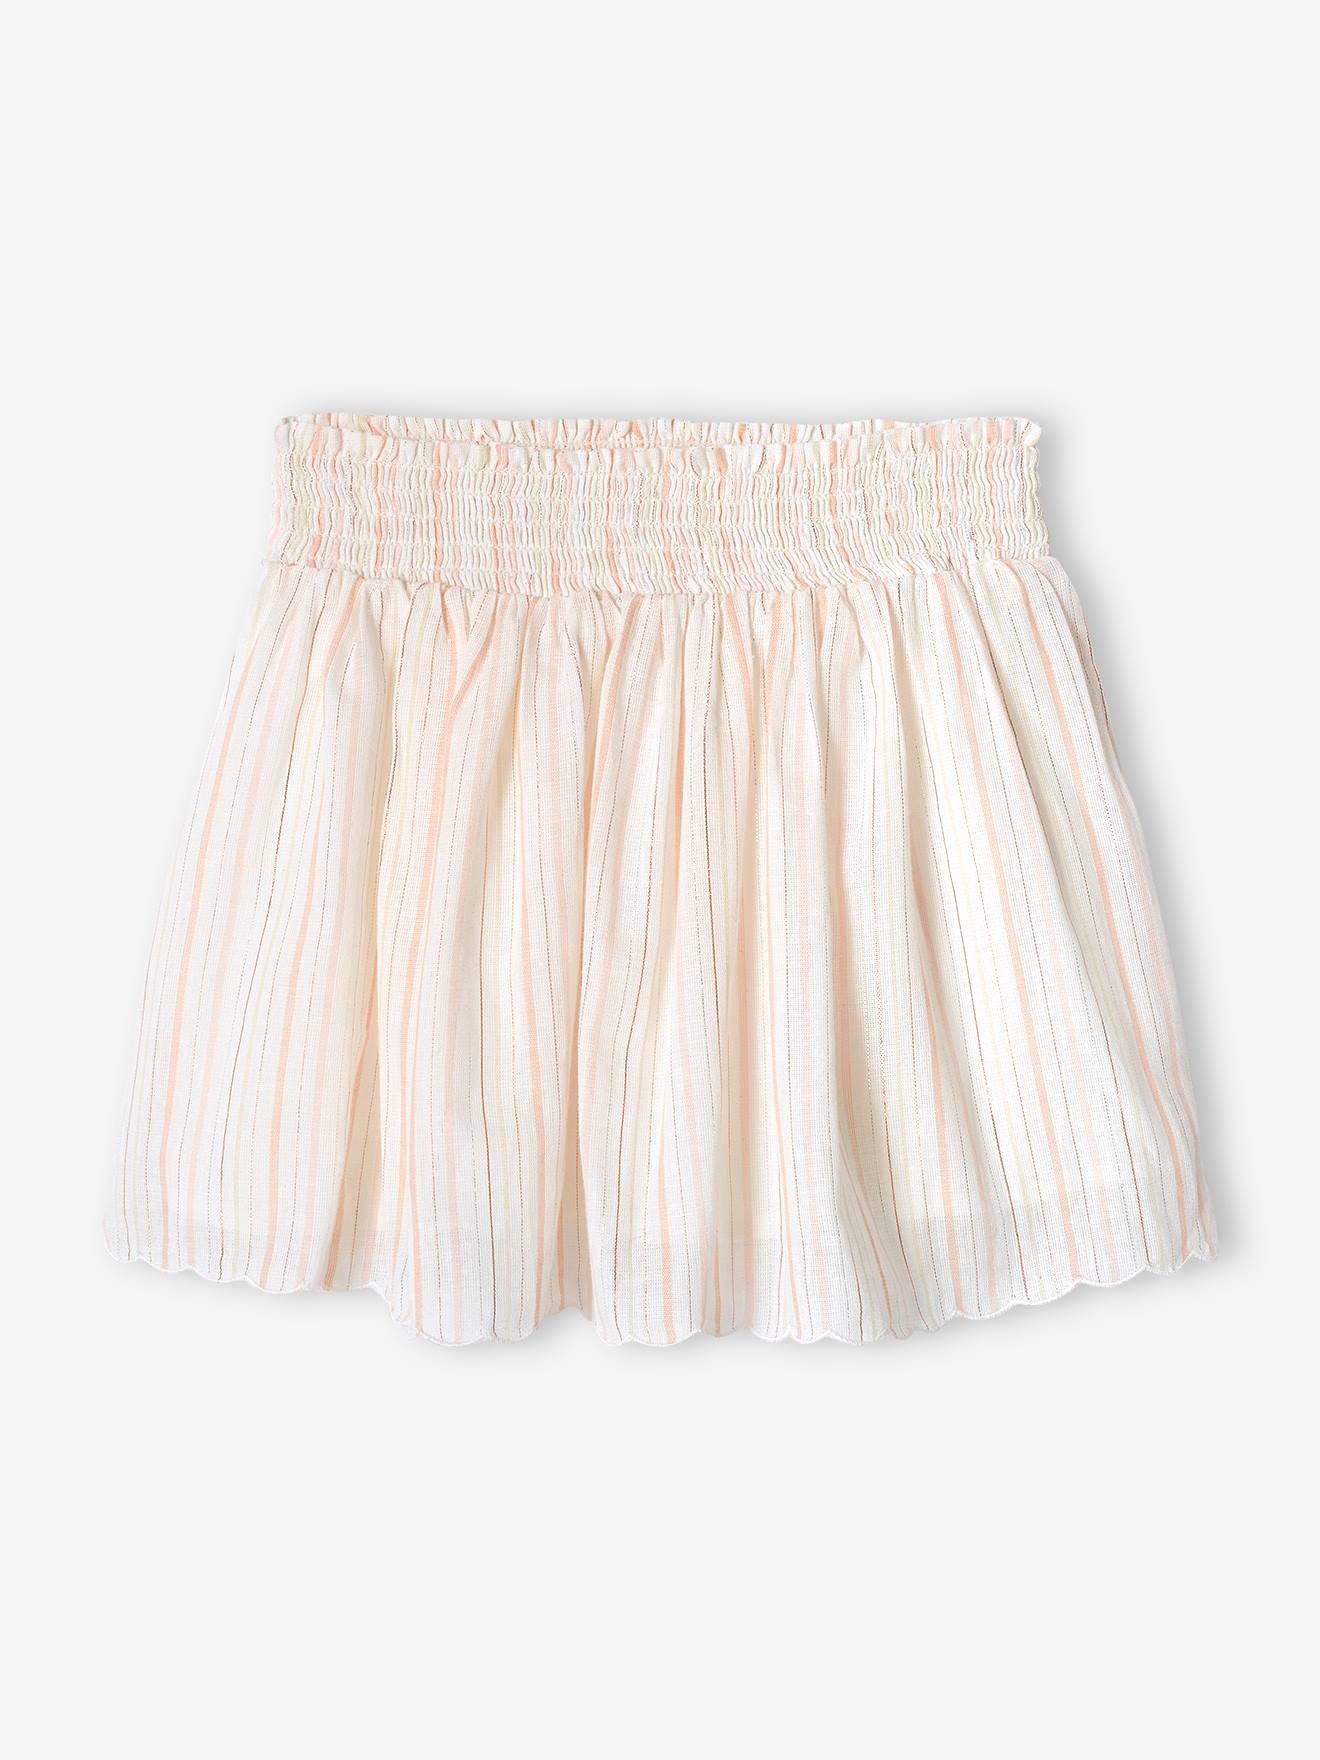 Striped Occasionwear Skirt, Shimmery Thread, for Girls ecru